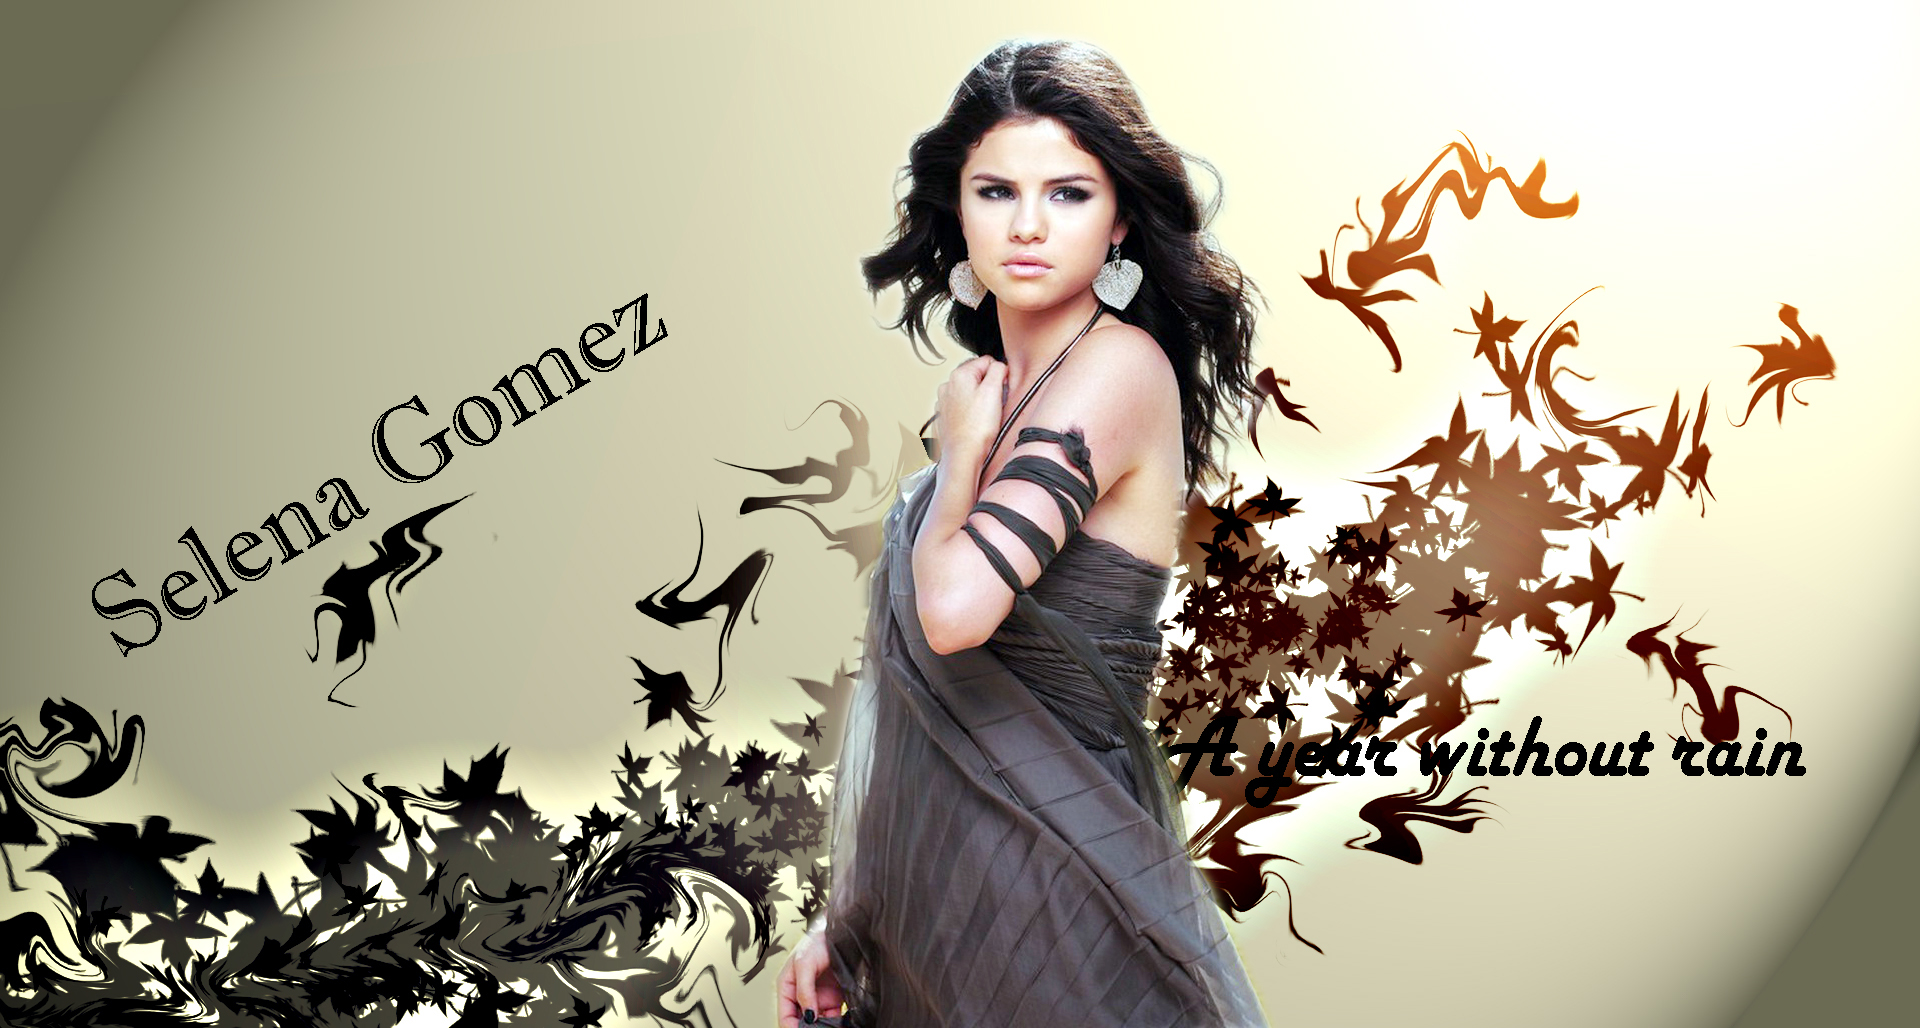 Selena Gomez in Fan Creations